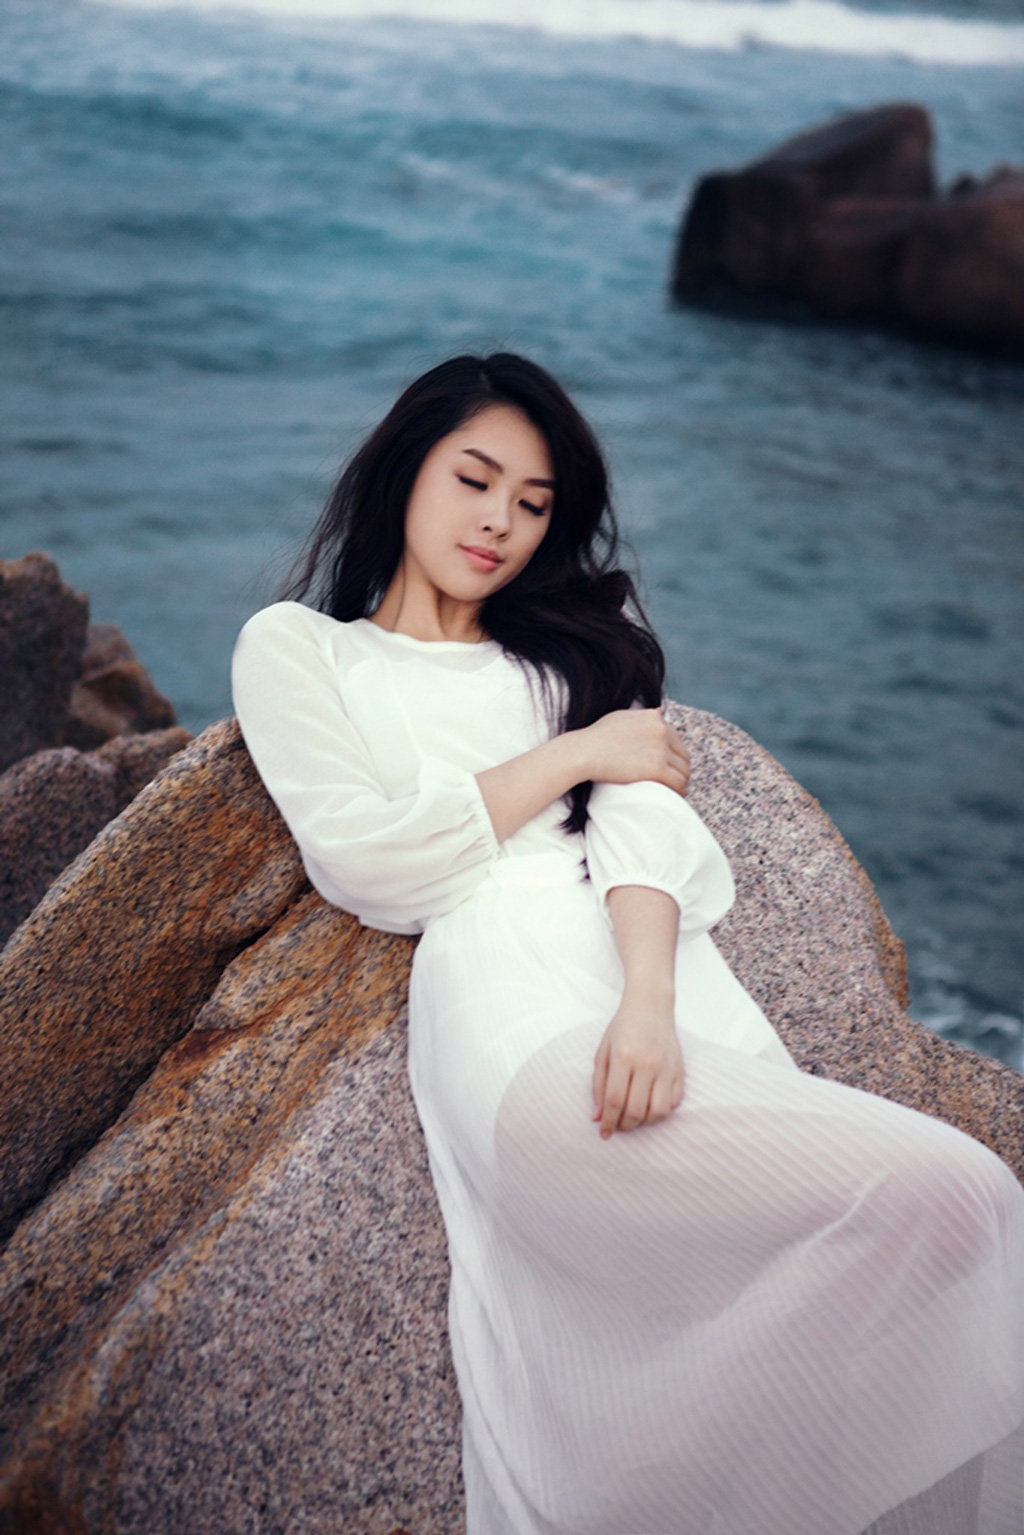 Hotgirl Vietnam Idol 2015 Khánh Tiên khoe vẻ đẹp trong veo trước biển 5